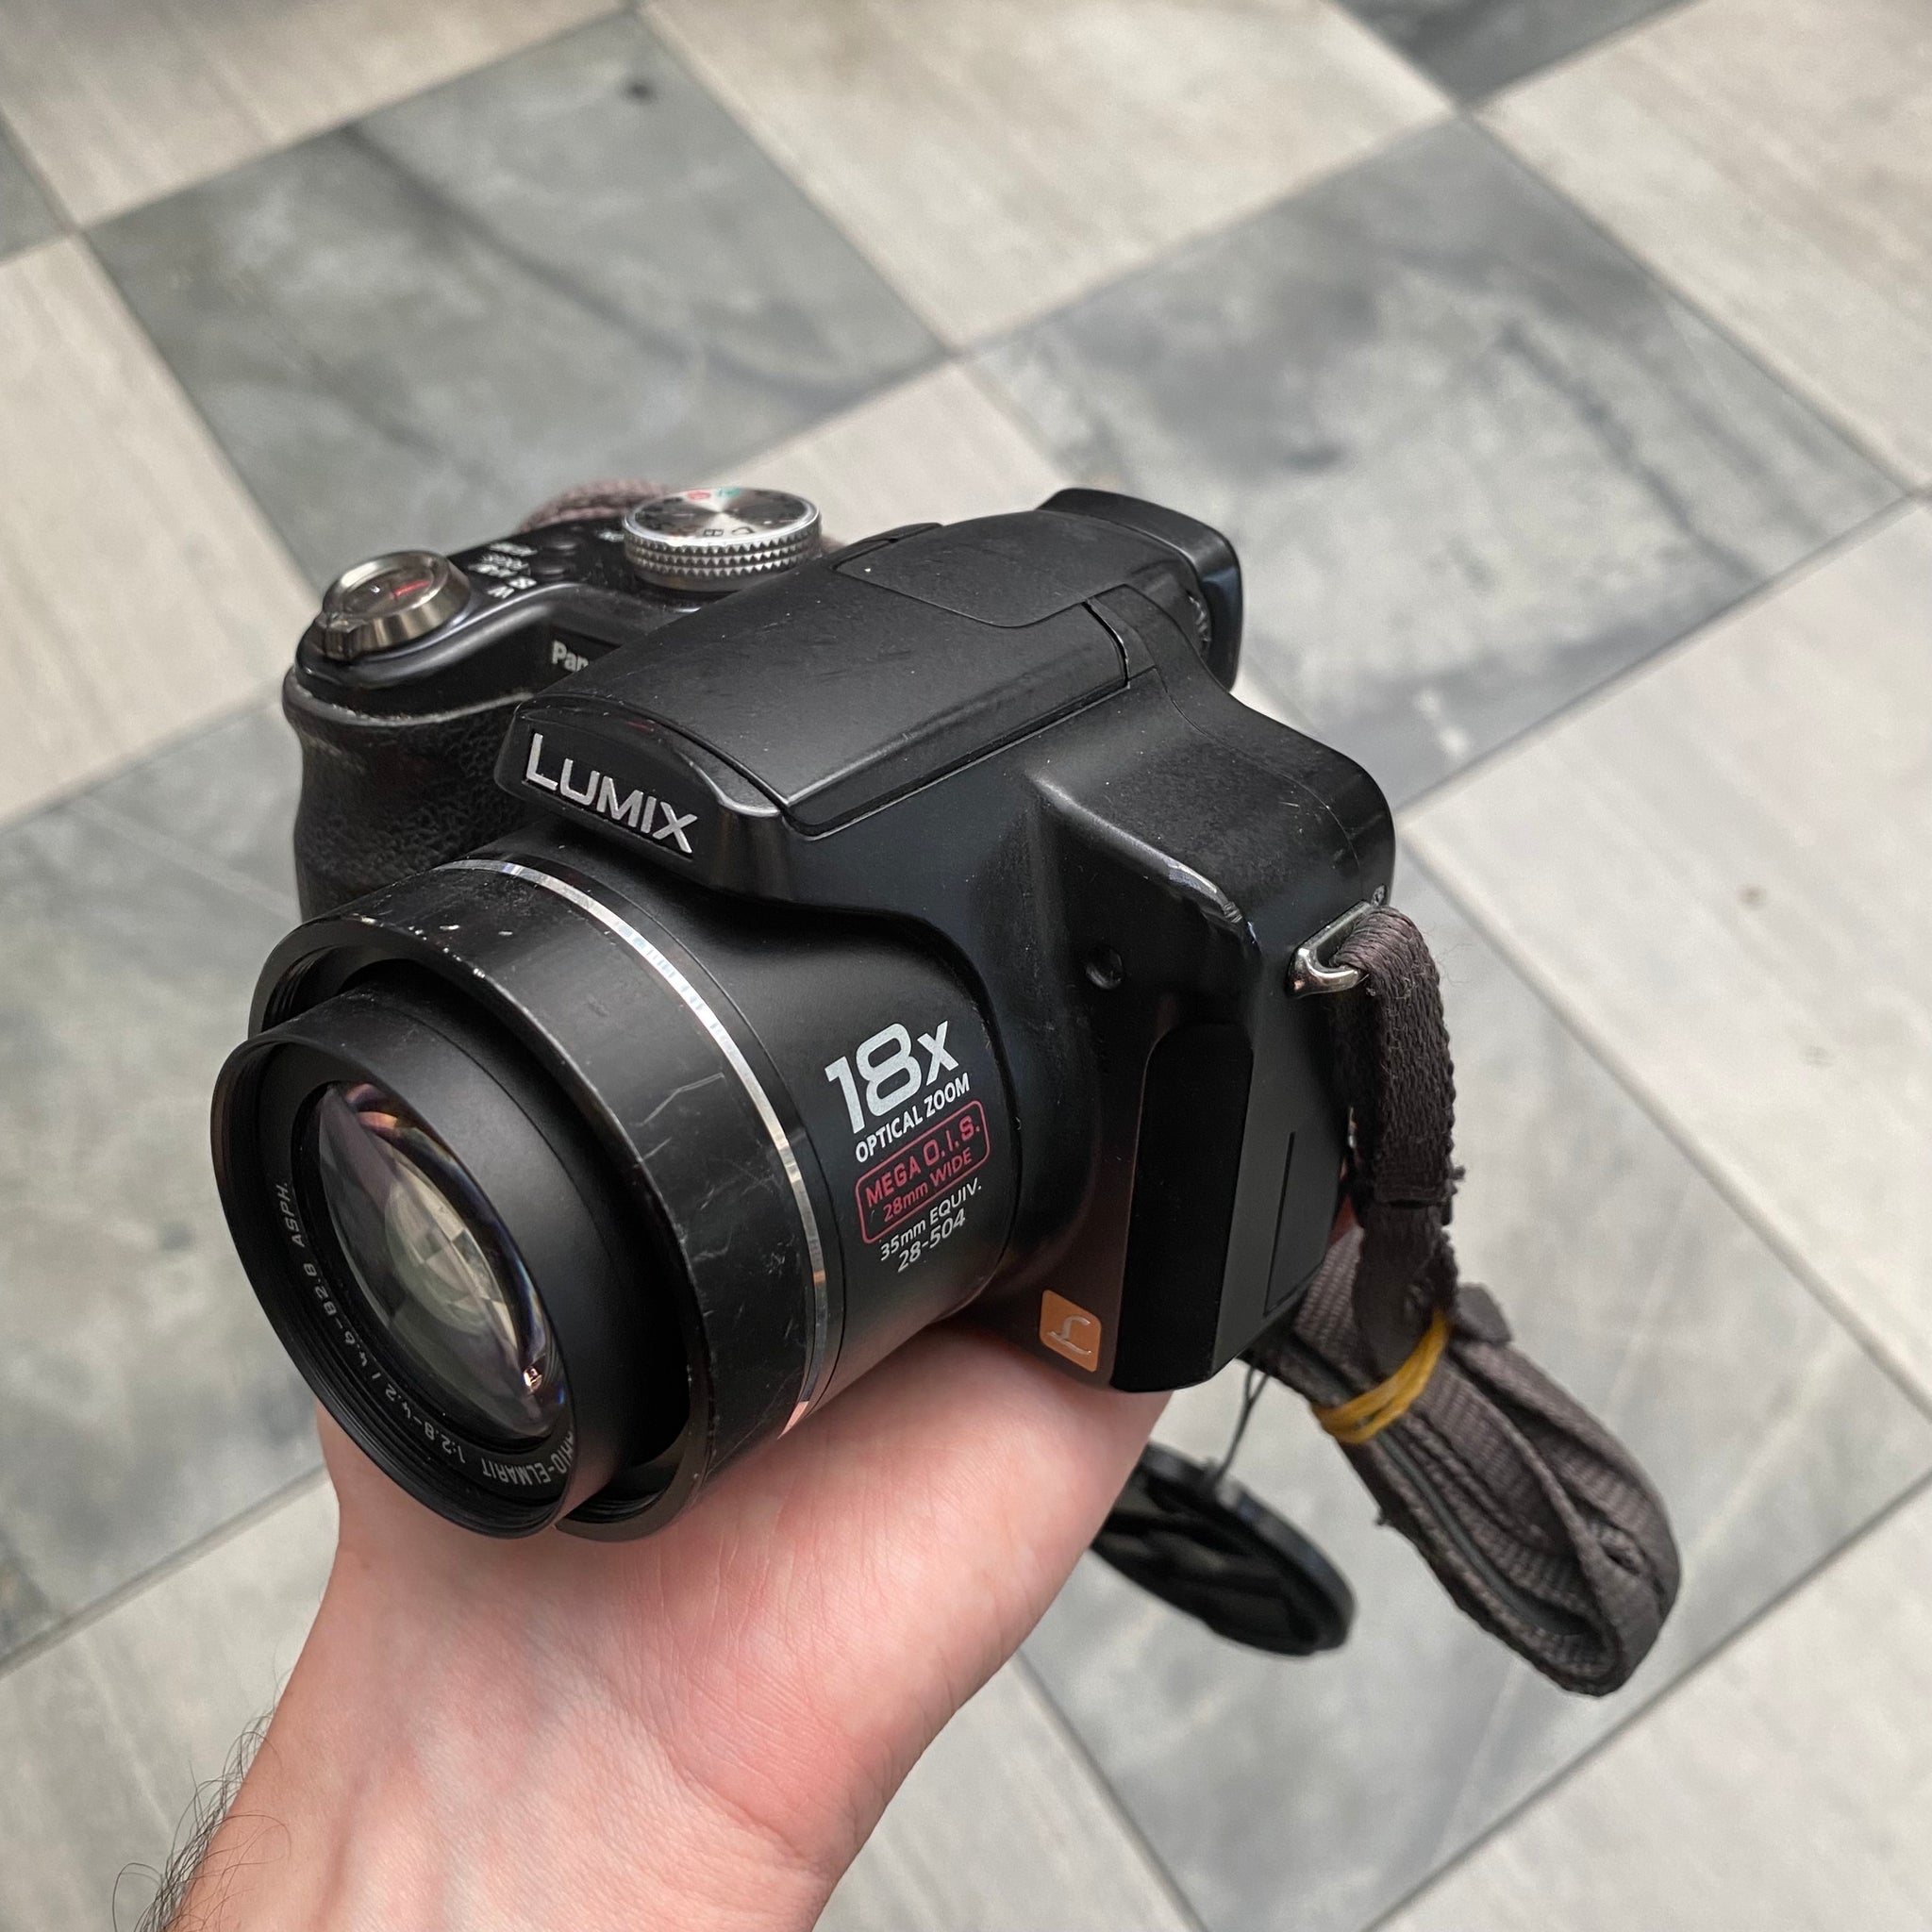 パナソニック デジタルカメラ LUMIX DMC-FZ28 - コンパクトデジタルカメラ